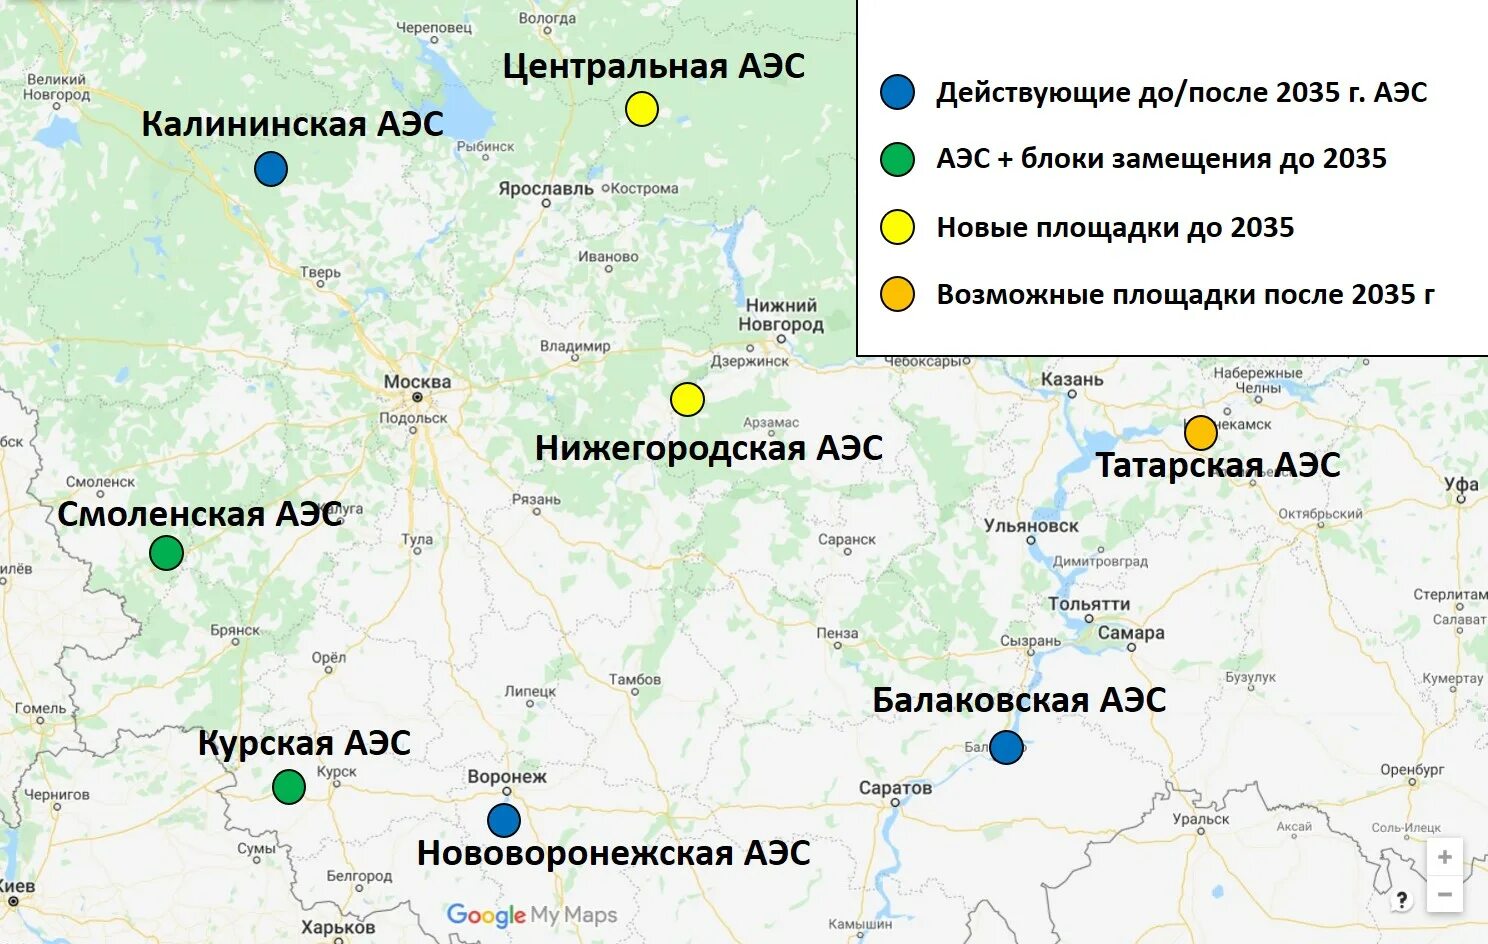 Карта действующих аэс. Смоленская АЭС на карте. Смоленская АЭС атомная электростанция на карте. Смоленская АЭС на карте центральной России. Смоленская АЭС на карте России.